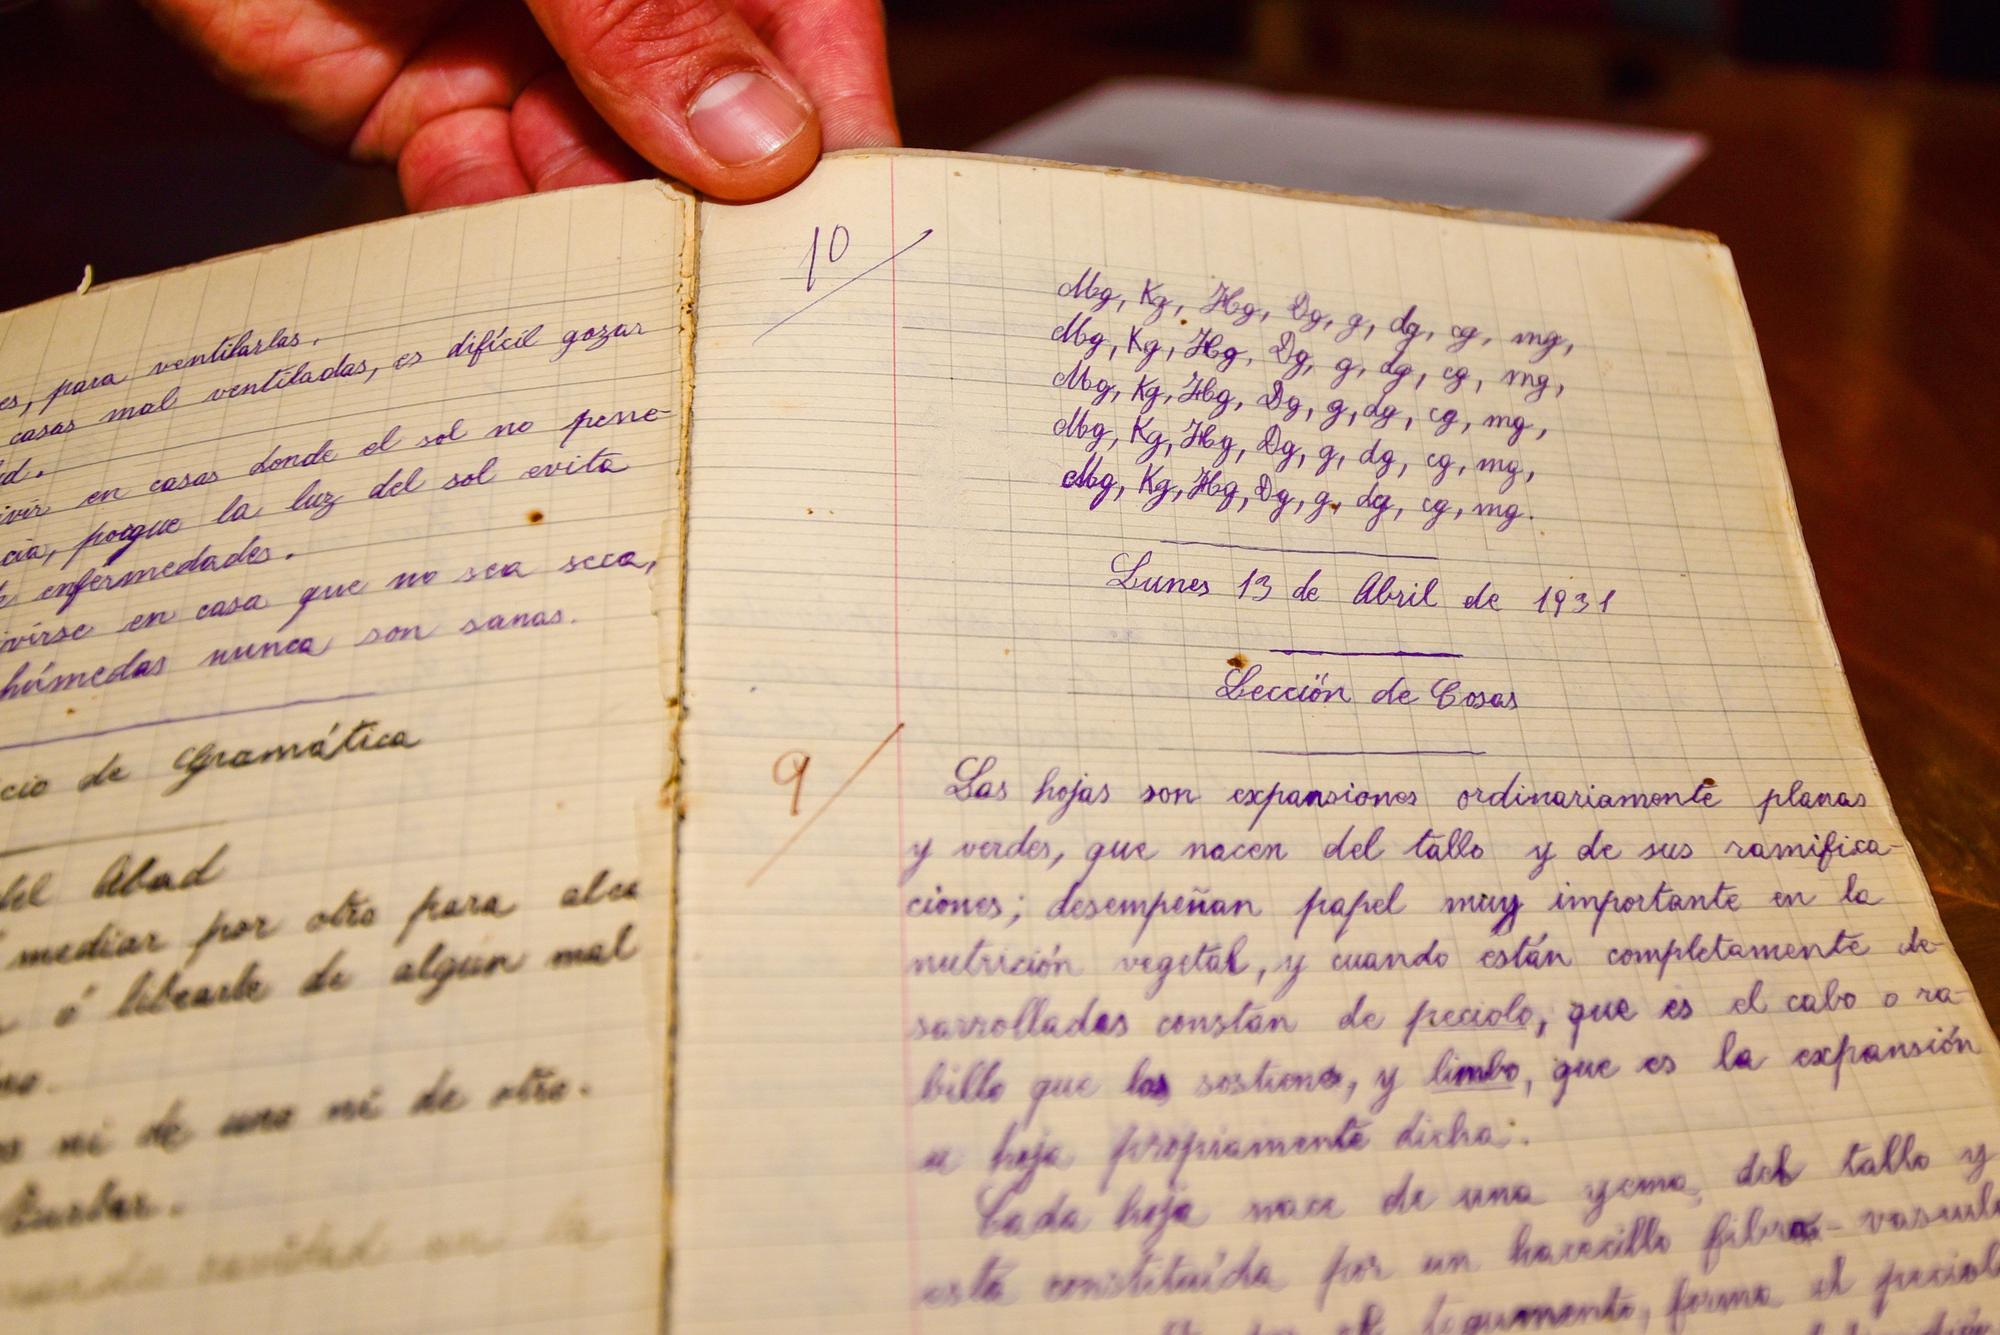 El Ateneo Republicano dona un cuaderno escolar de la actriz María Casares a la casa-museo Casares Quiroga